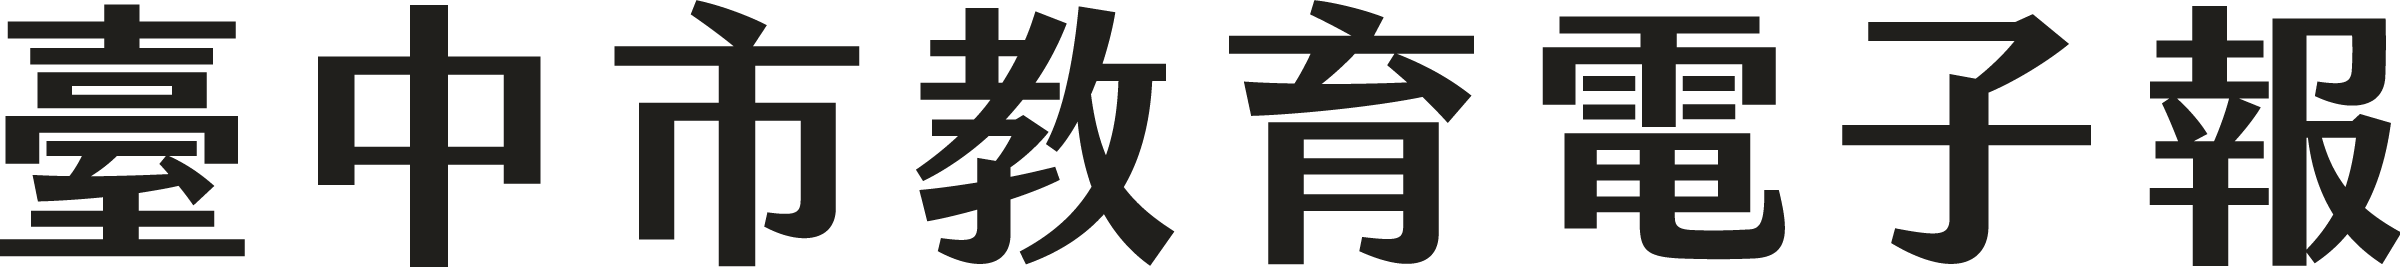 臺中市教育電子報logo